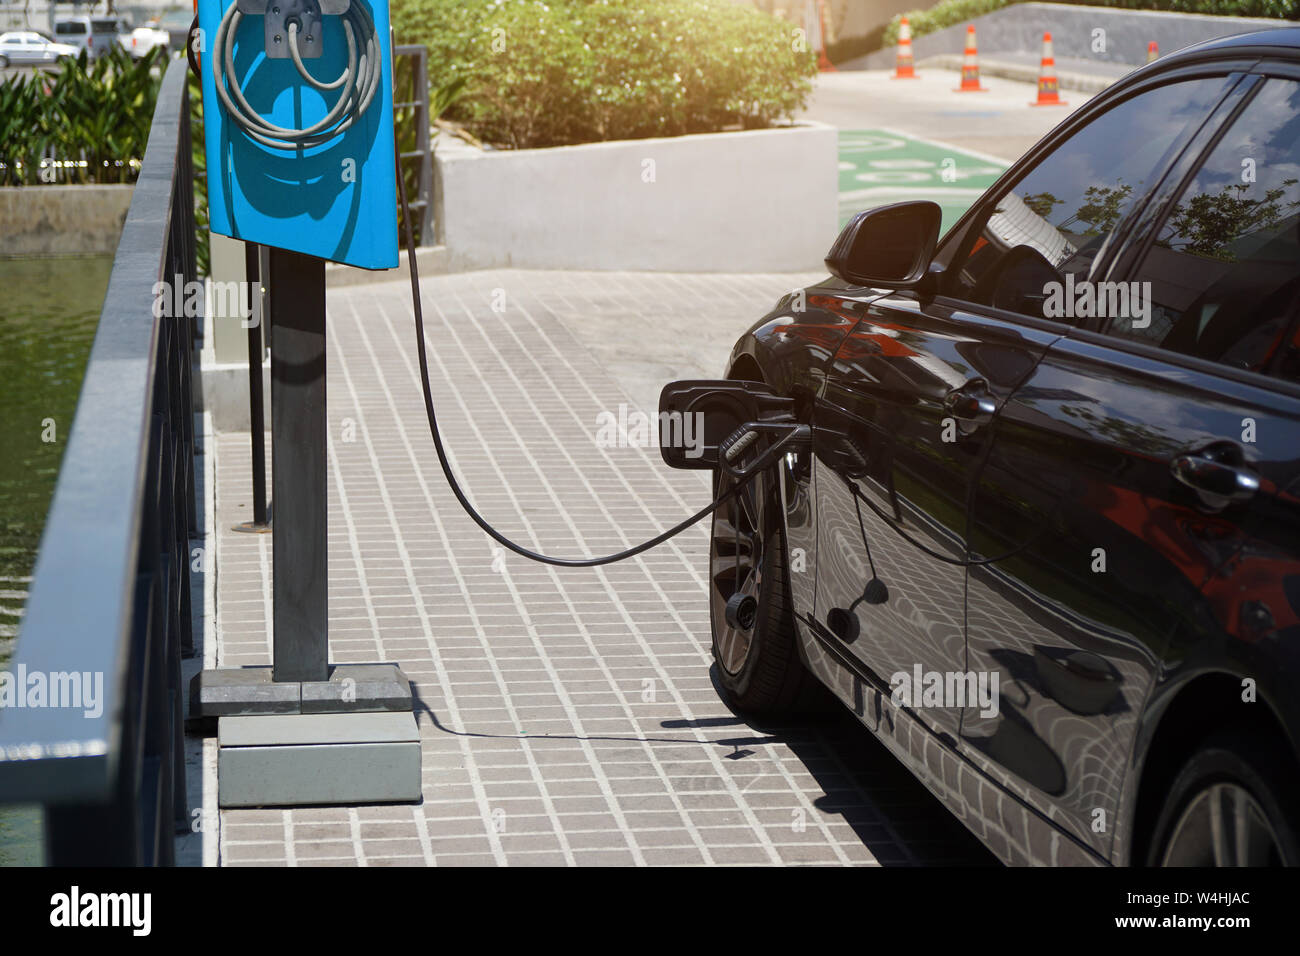 Le automobili elettriche sono in carica energia elettrica per memorizzare in batterie per auto. Le automobili elettriche sono diventati popolari in tutto il mondo per ridurre l'inquinamento atmosferico. Foto Stock